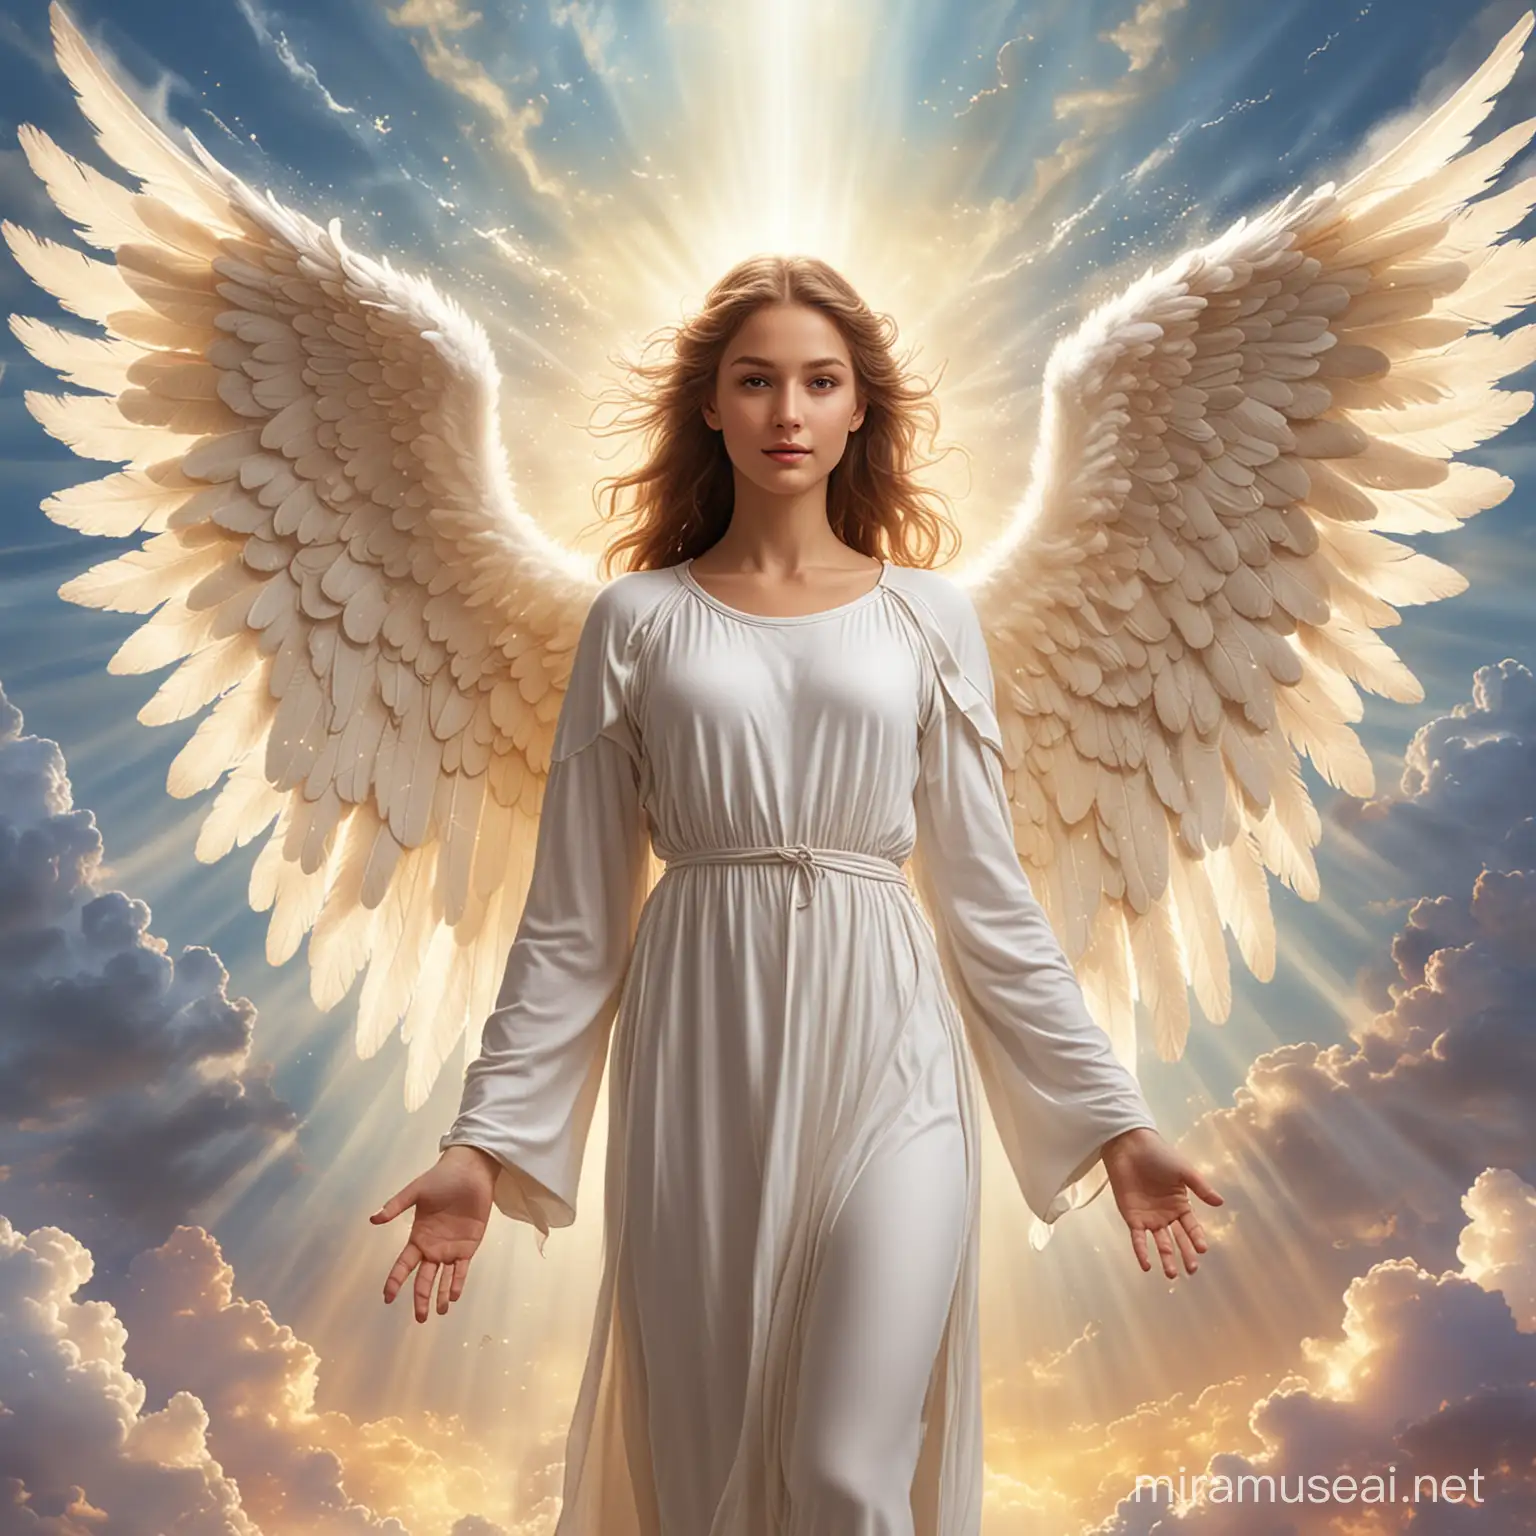 Heavenly Angel with Glowing Wings in Celestial Atmosphere